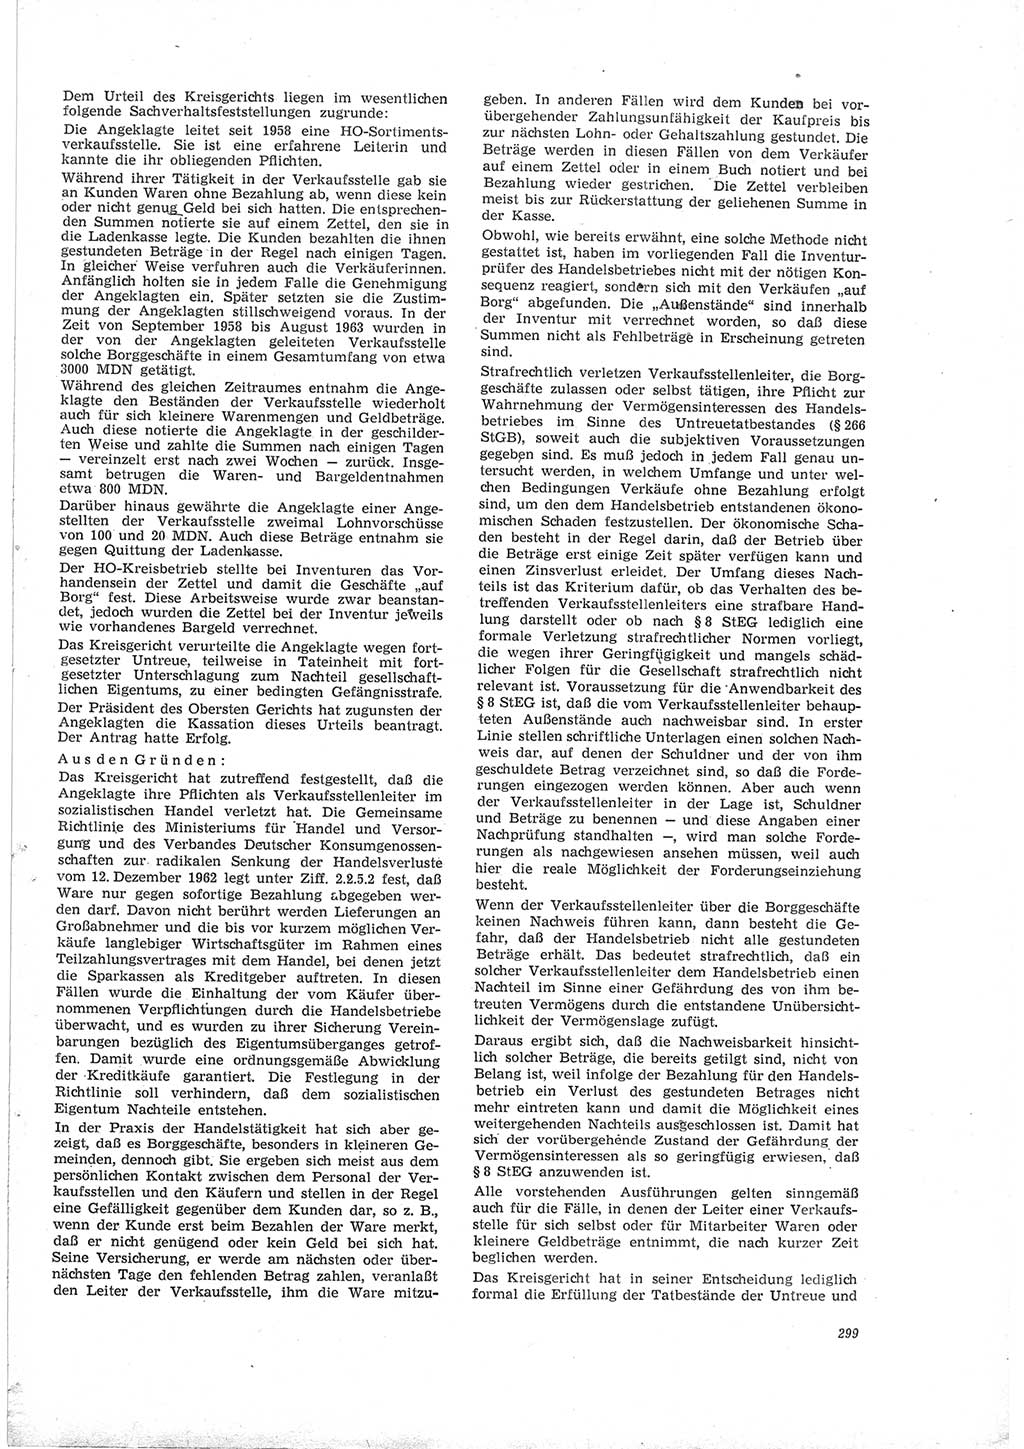 Neue Justiz (NJ), Zeitschrift für Recht und Rechtswissenschaft [Deutsche Demokratische Republik (DDR)], 19. Jahrgang 1965, Seite 299 (NJ DDR 1965, S. 299)